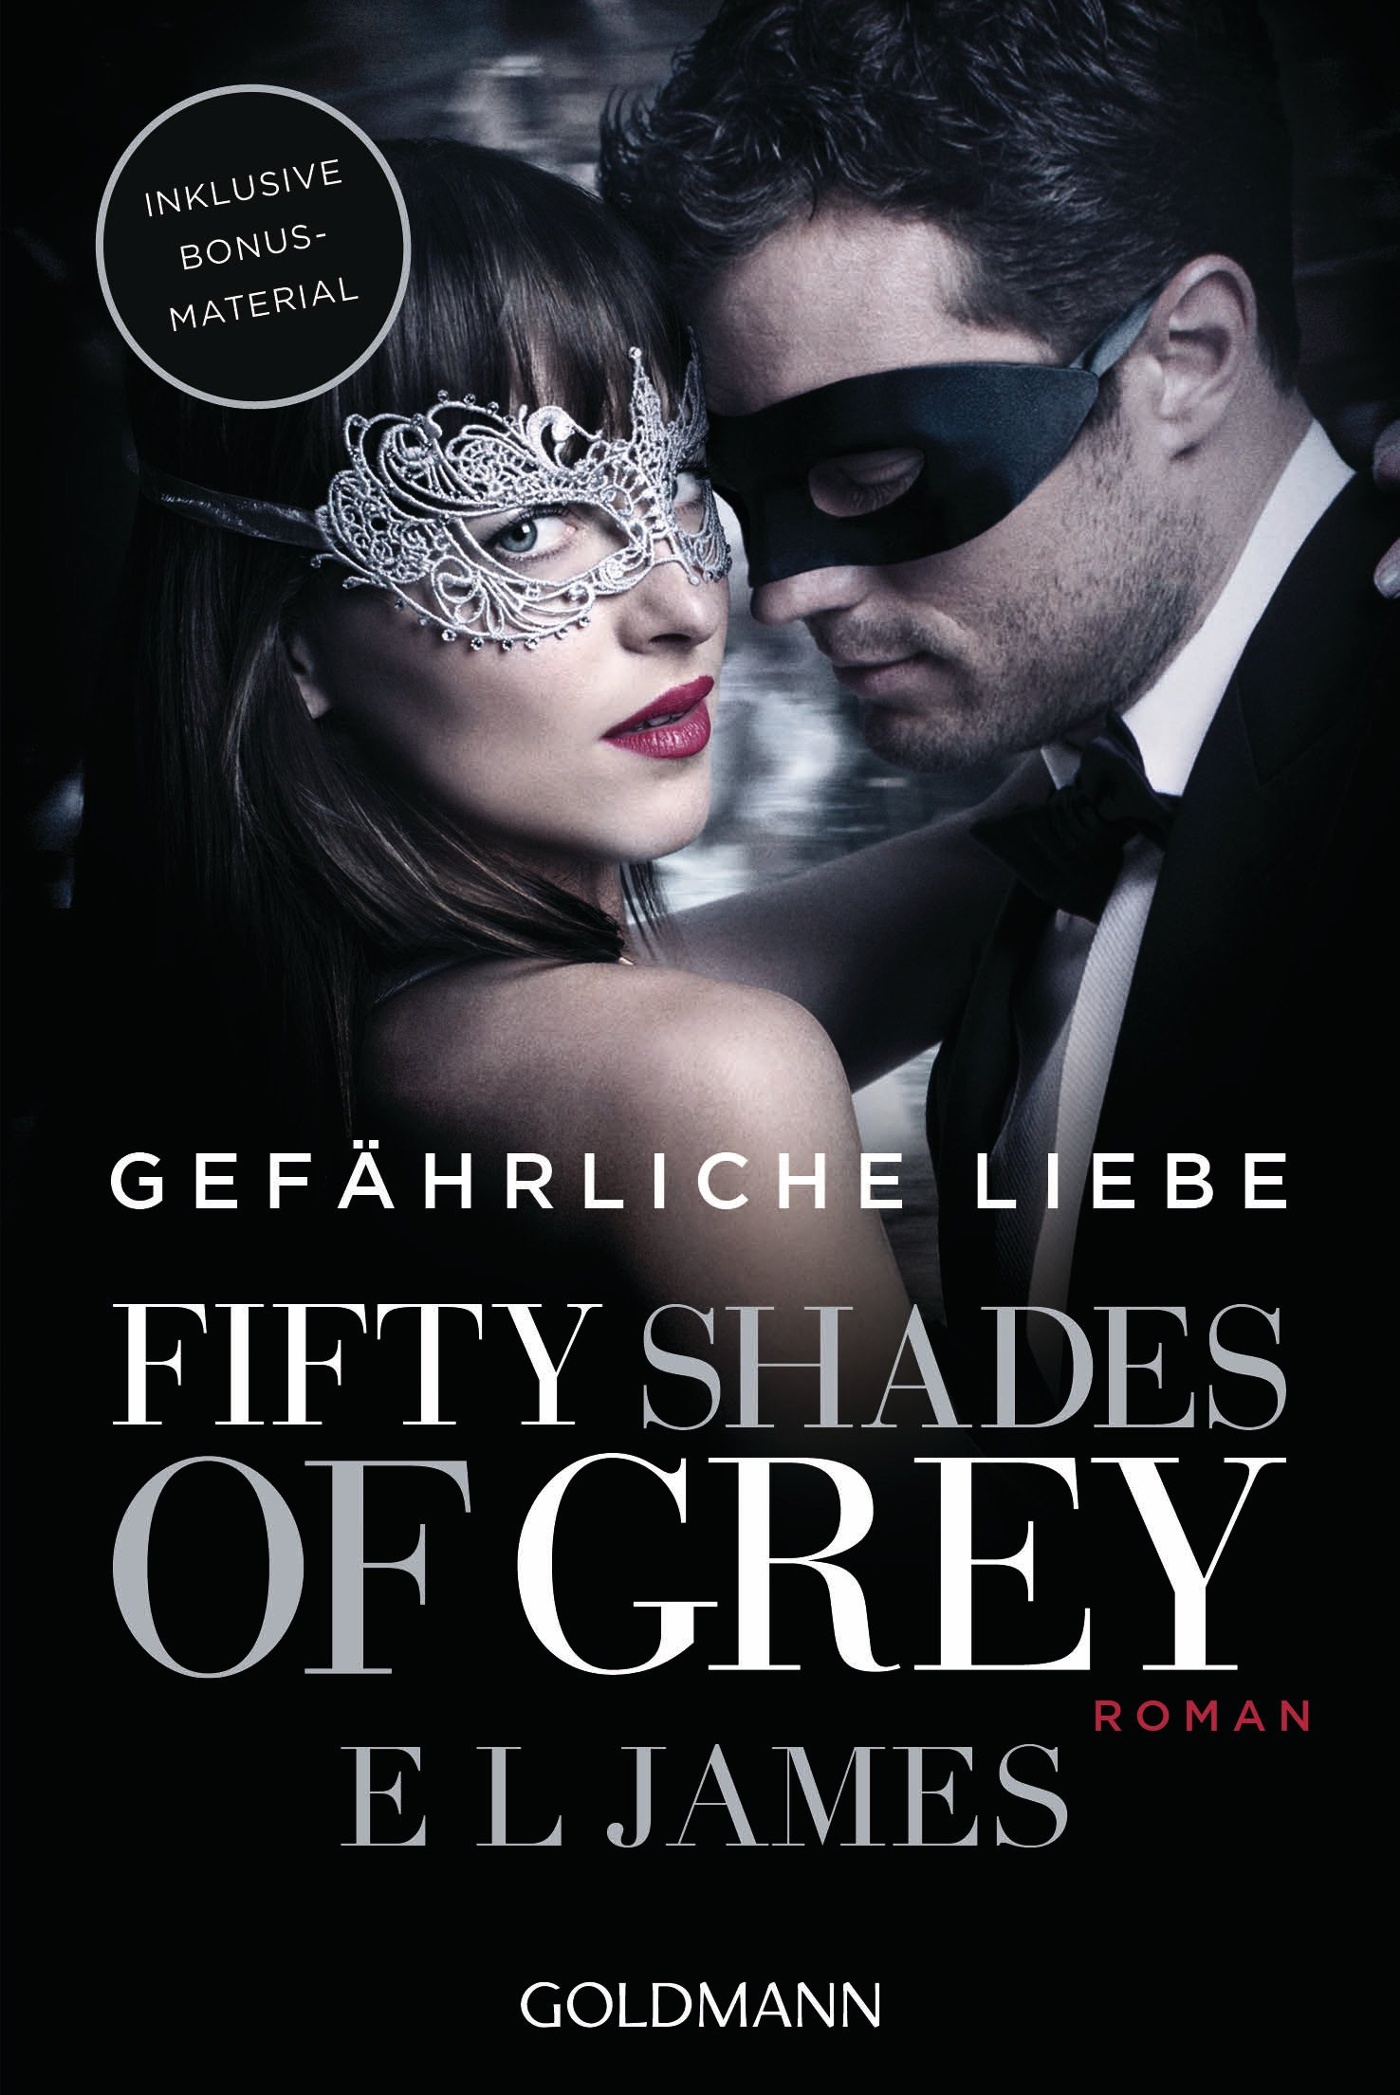 E L James: Fifty Shades of Grey.gefÃ¤hrliche Liebe 2 CD ÐºÑƒÐ¿Ð¸Ñ‚ÑŒ Ð² Ð¸Ð½Ñ‚ÐµÑ€Ð½ÐµÑ‚ Ð¼Ð°...